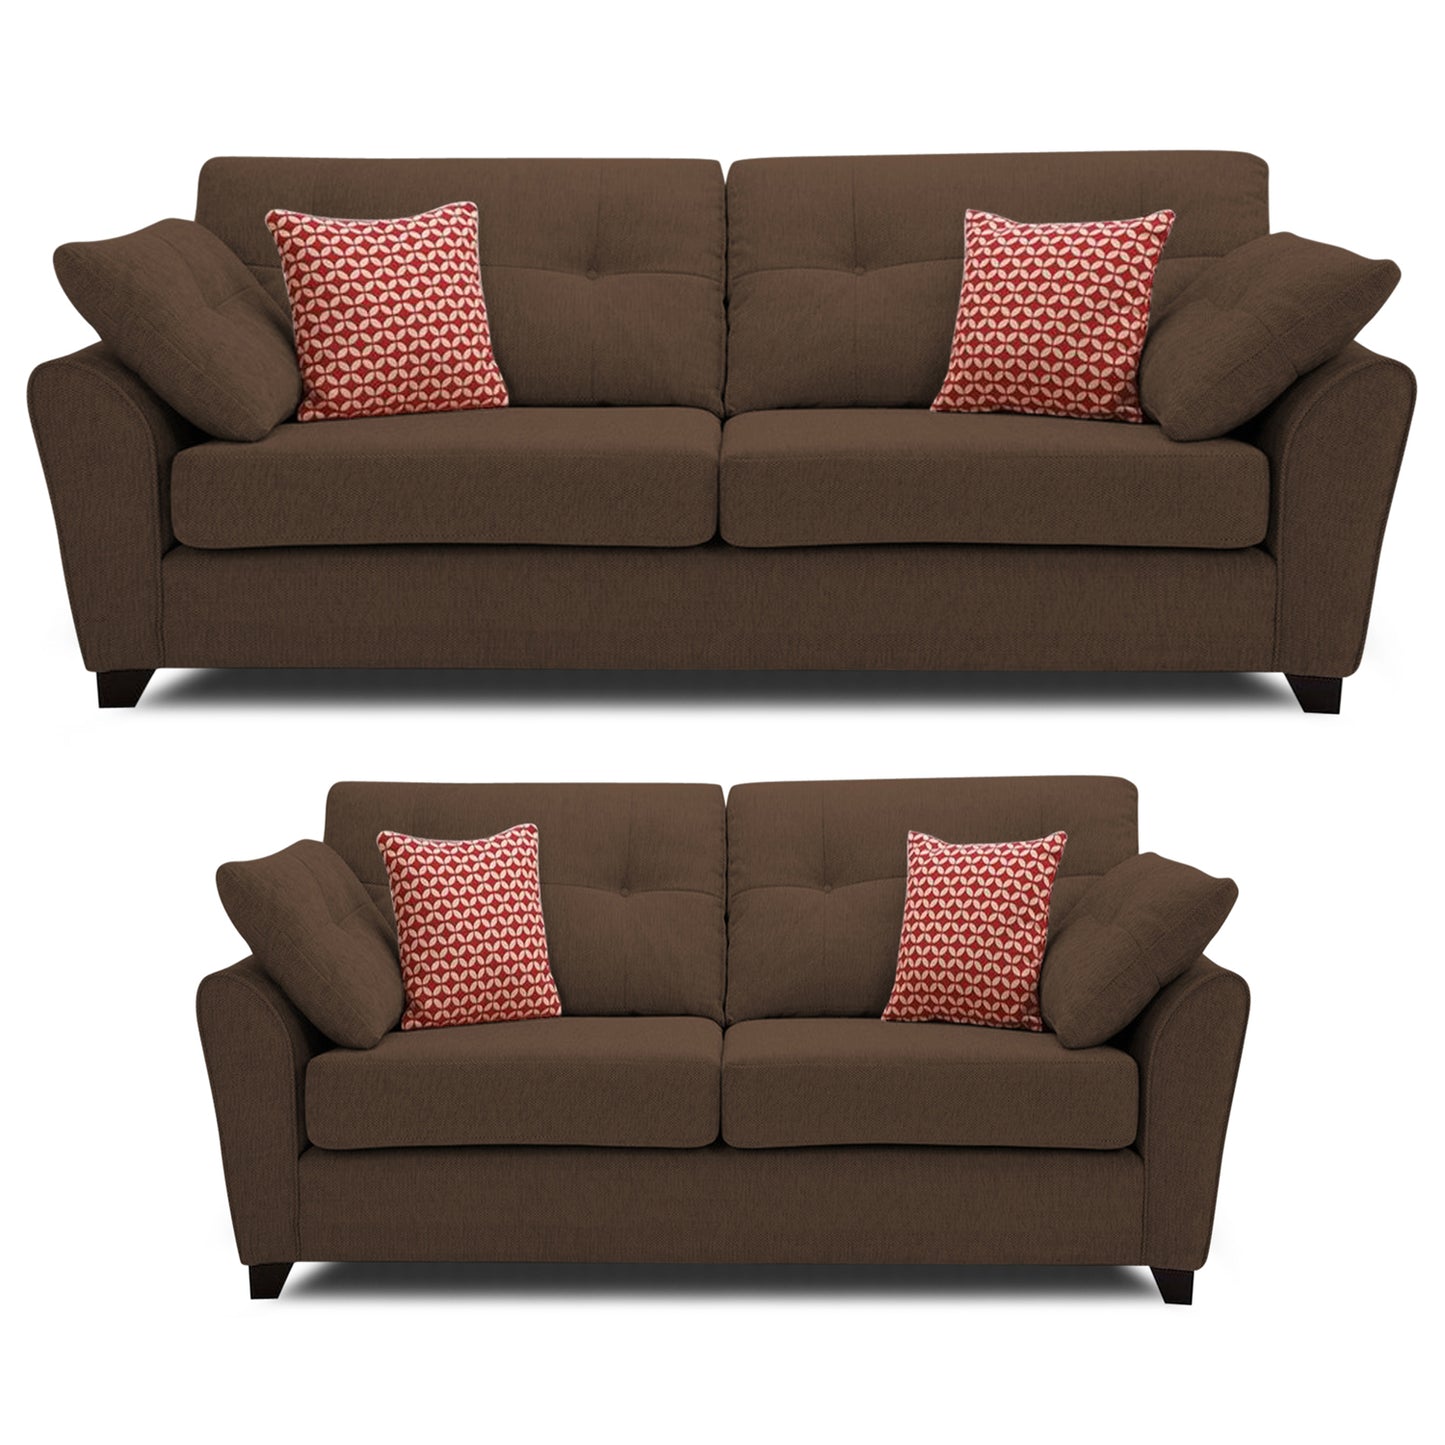 Adorn India Moris 5 Seater 3+2 Fabric Sofa Set (Brown)